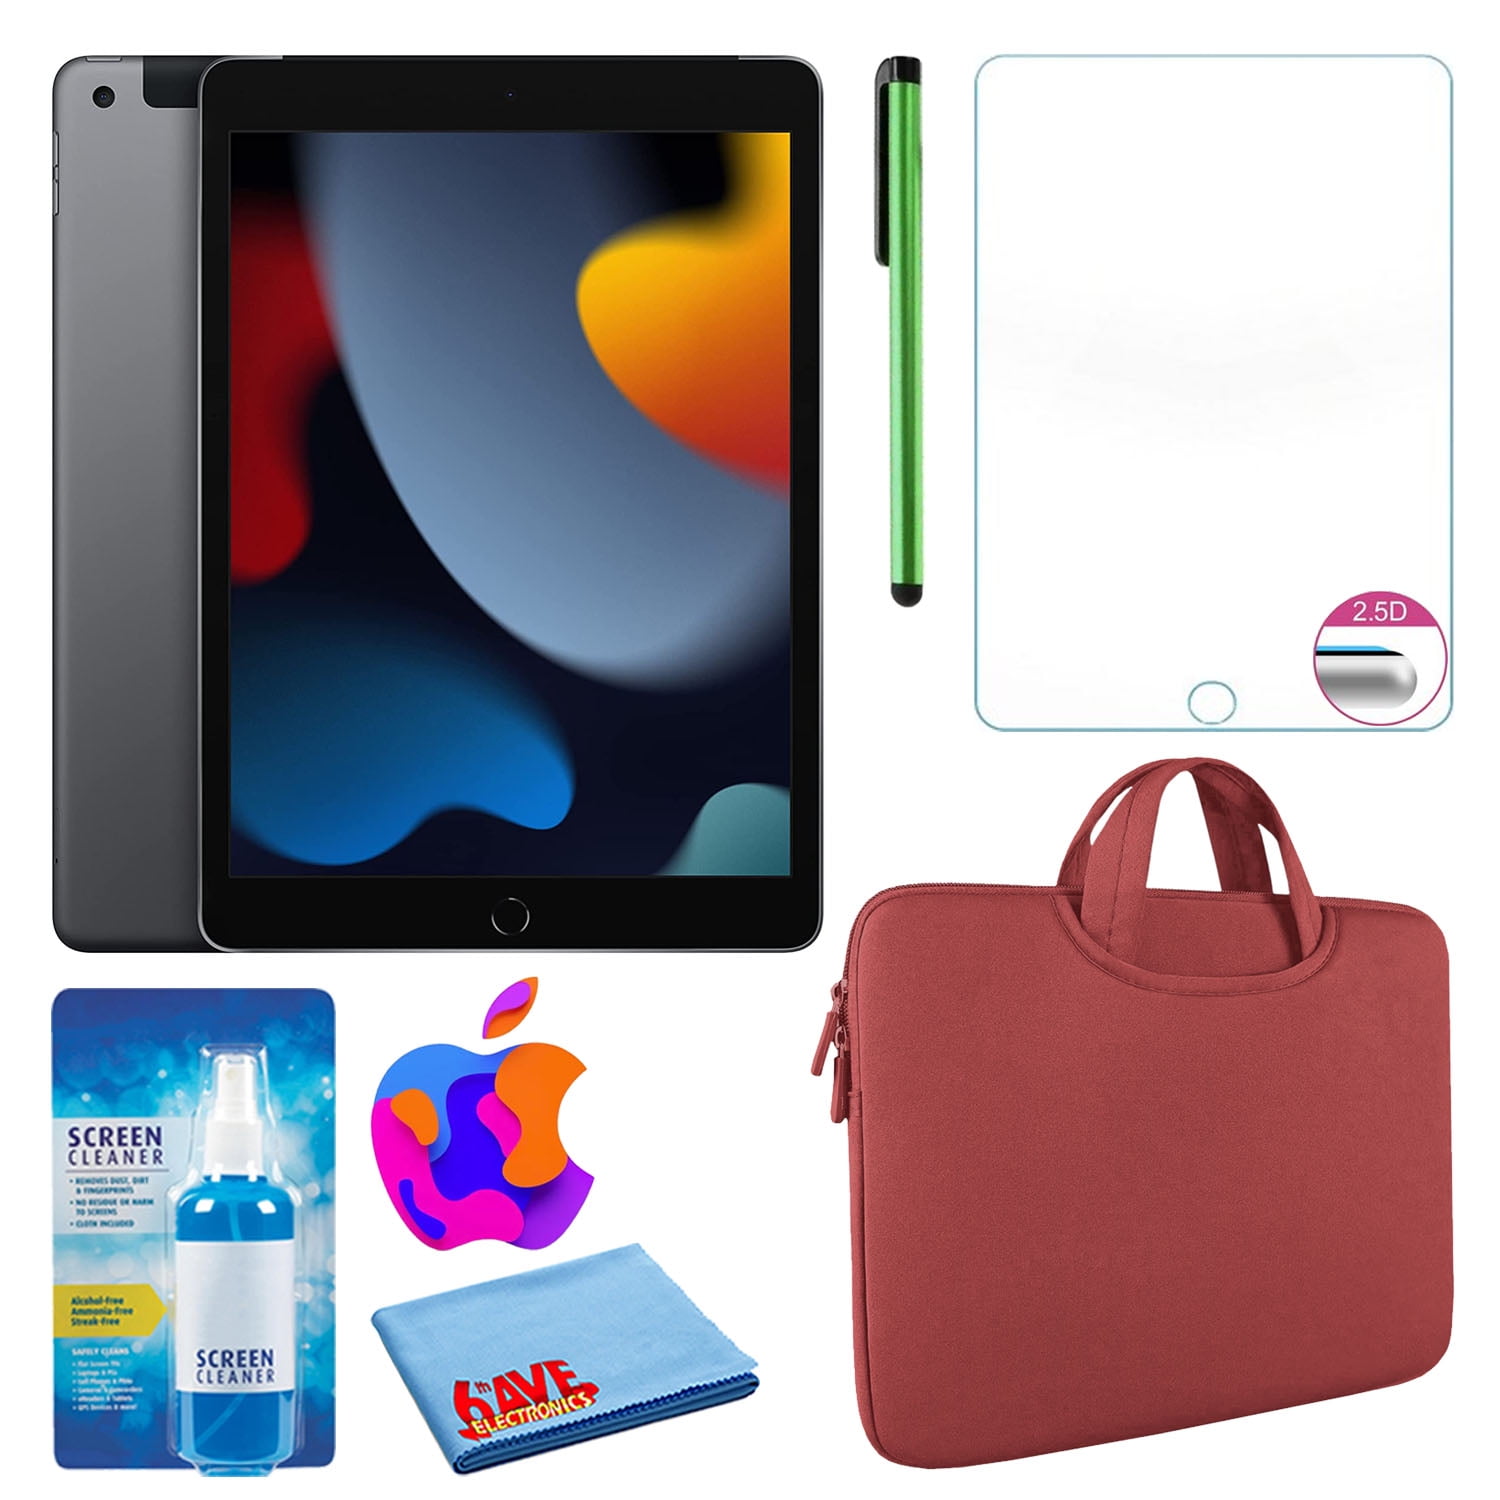 2021 Apple iPad Mini Wi-Fi 256GB - Pink (6th Generation) - Walmart.com